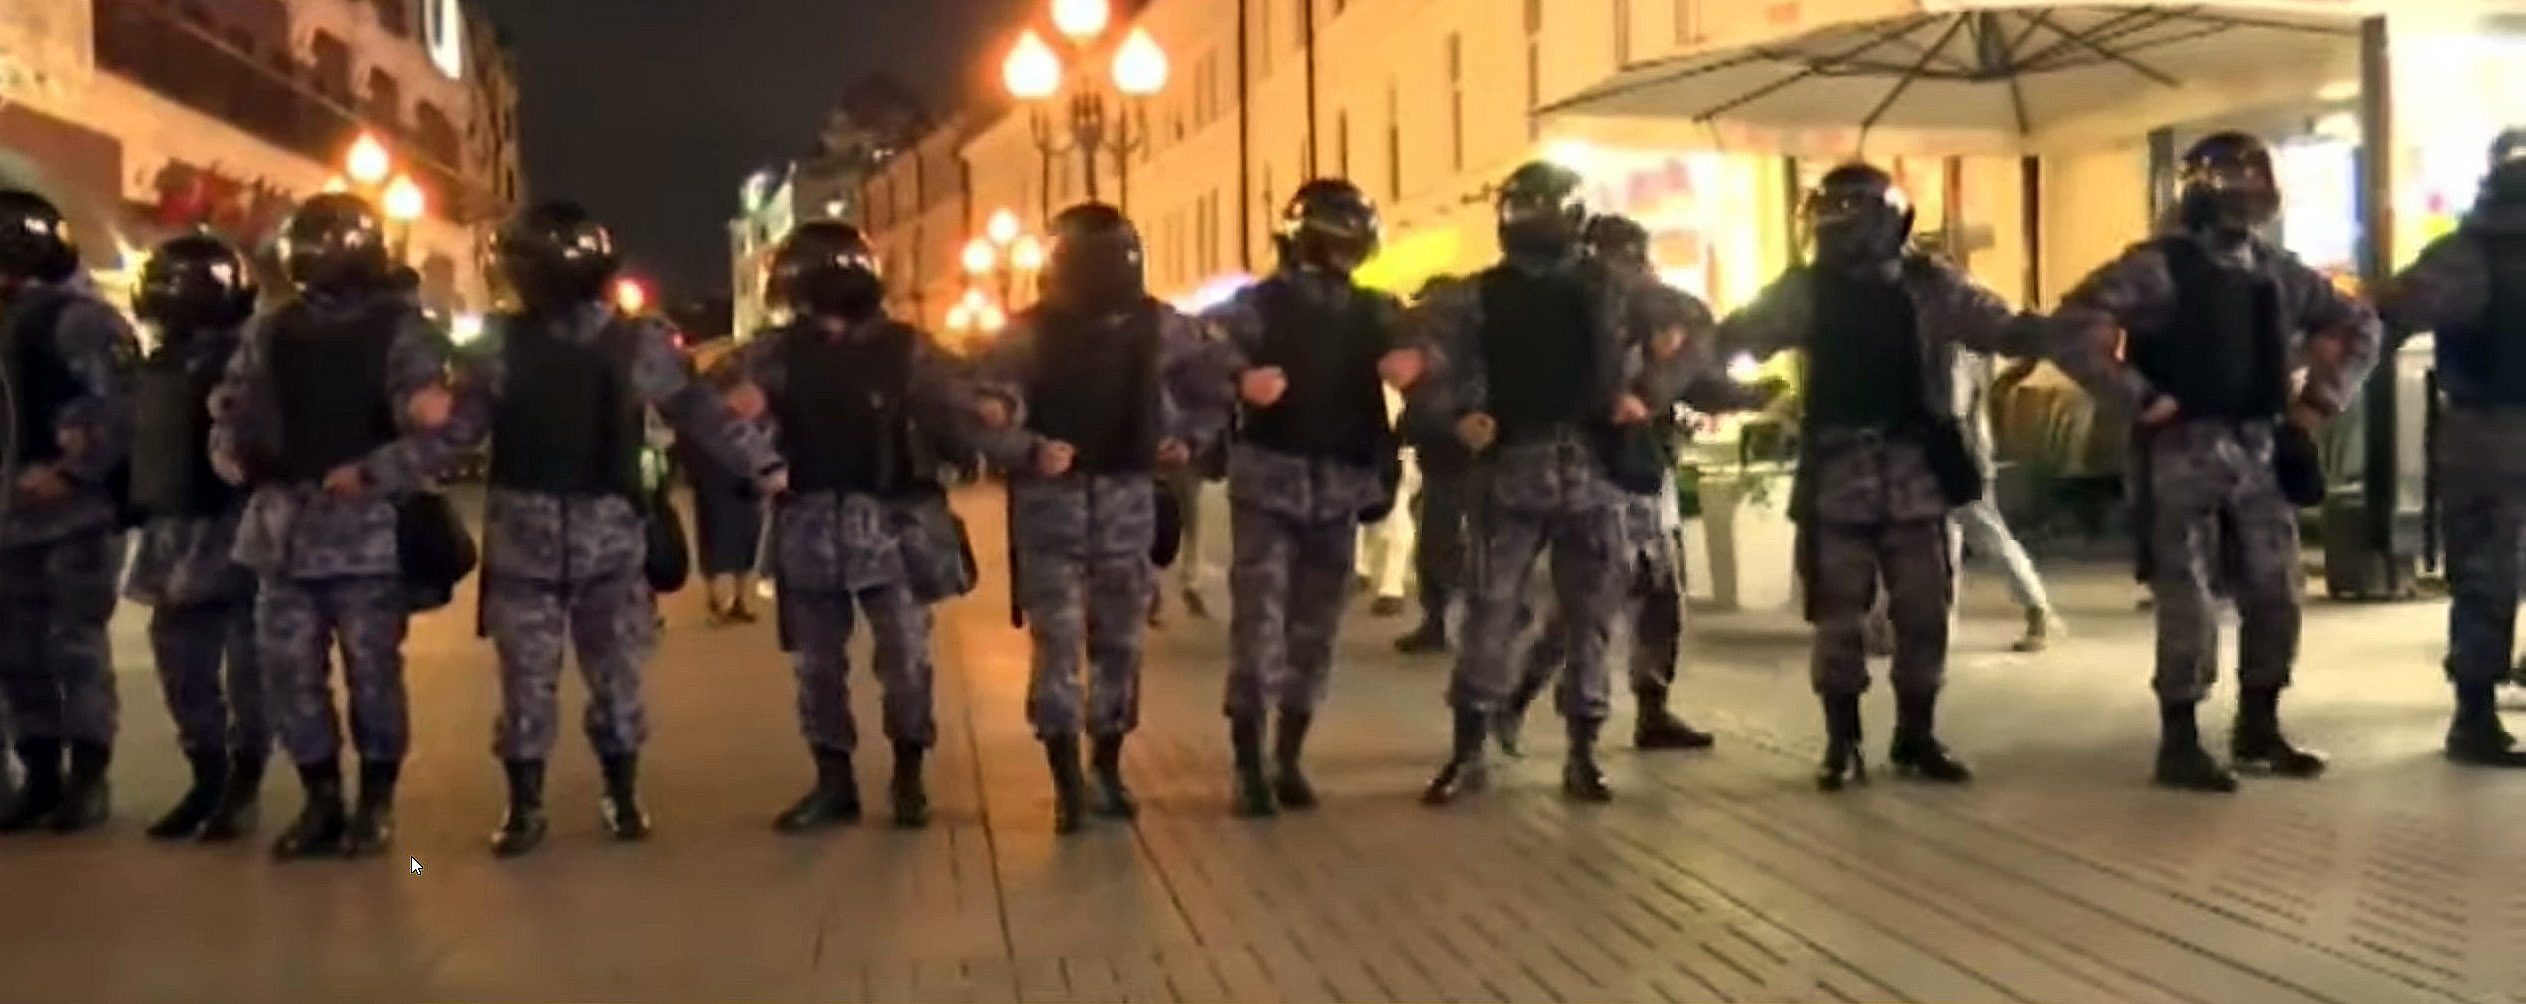 Policija tramdo protestuotojus Rusijoje prieš karinę mobilizaciją Ukrainon | Alkas.lt ekrano nuotr.